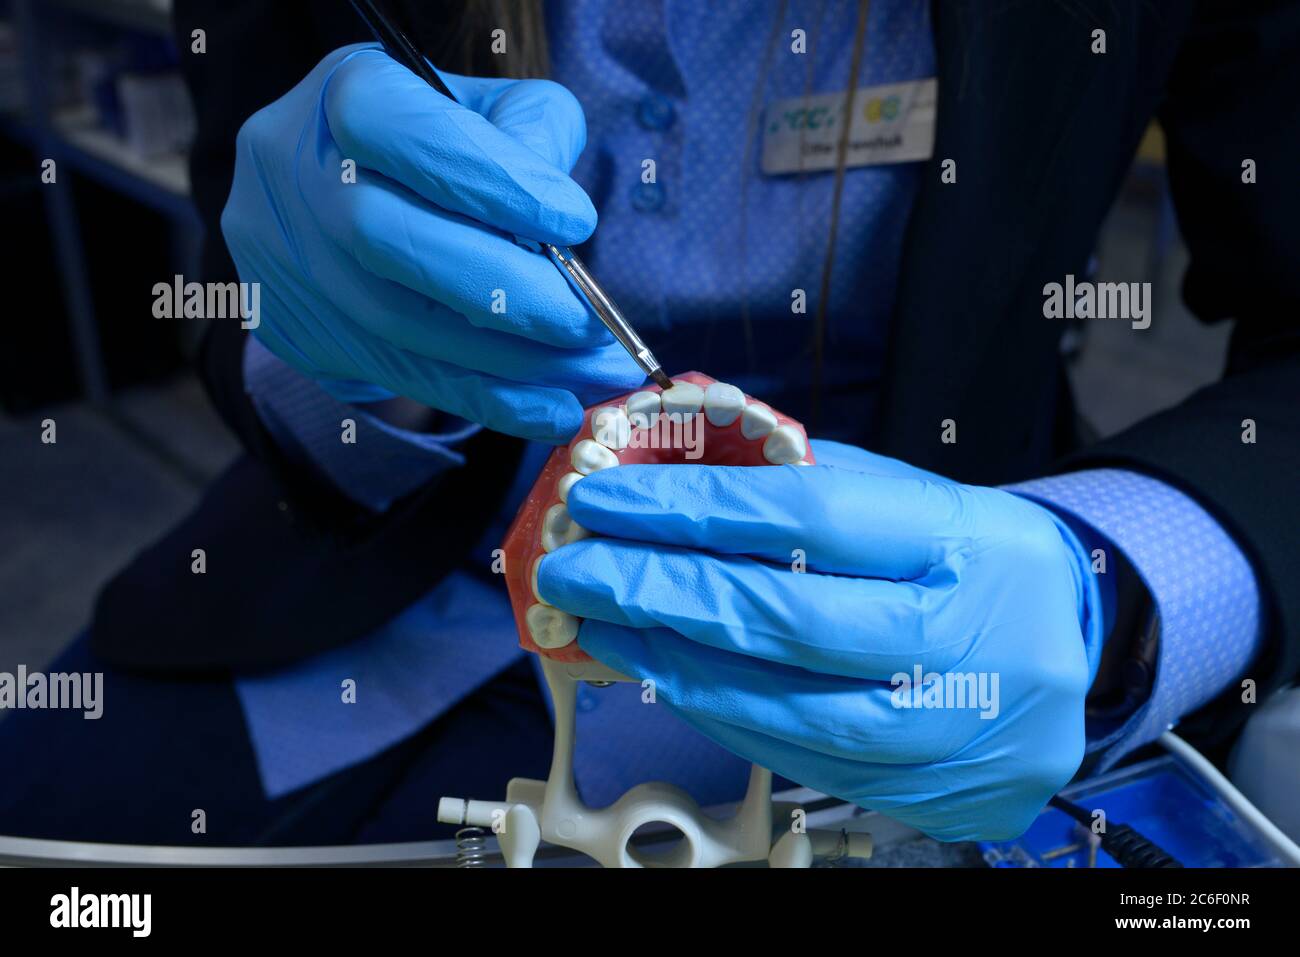 Femme mains dans des gants bleus tenant la brosse dentaire au-dessus de la typographie, moulage en plastique des mâchoires et des dents humaines, montrant la manière de traitement dentaire Banque D'Images